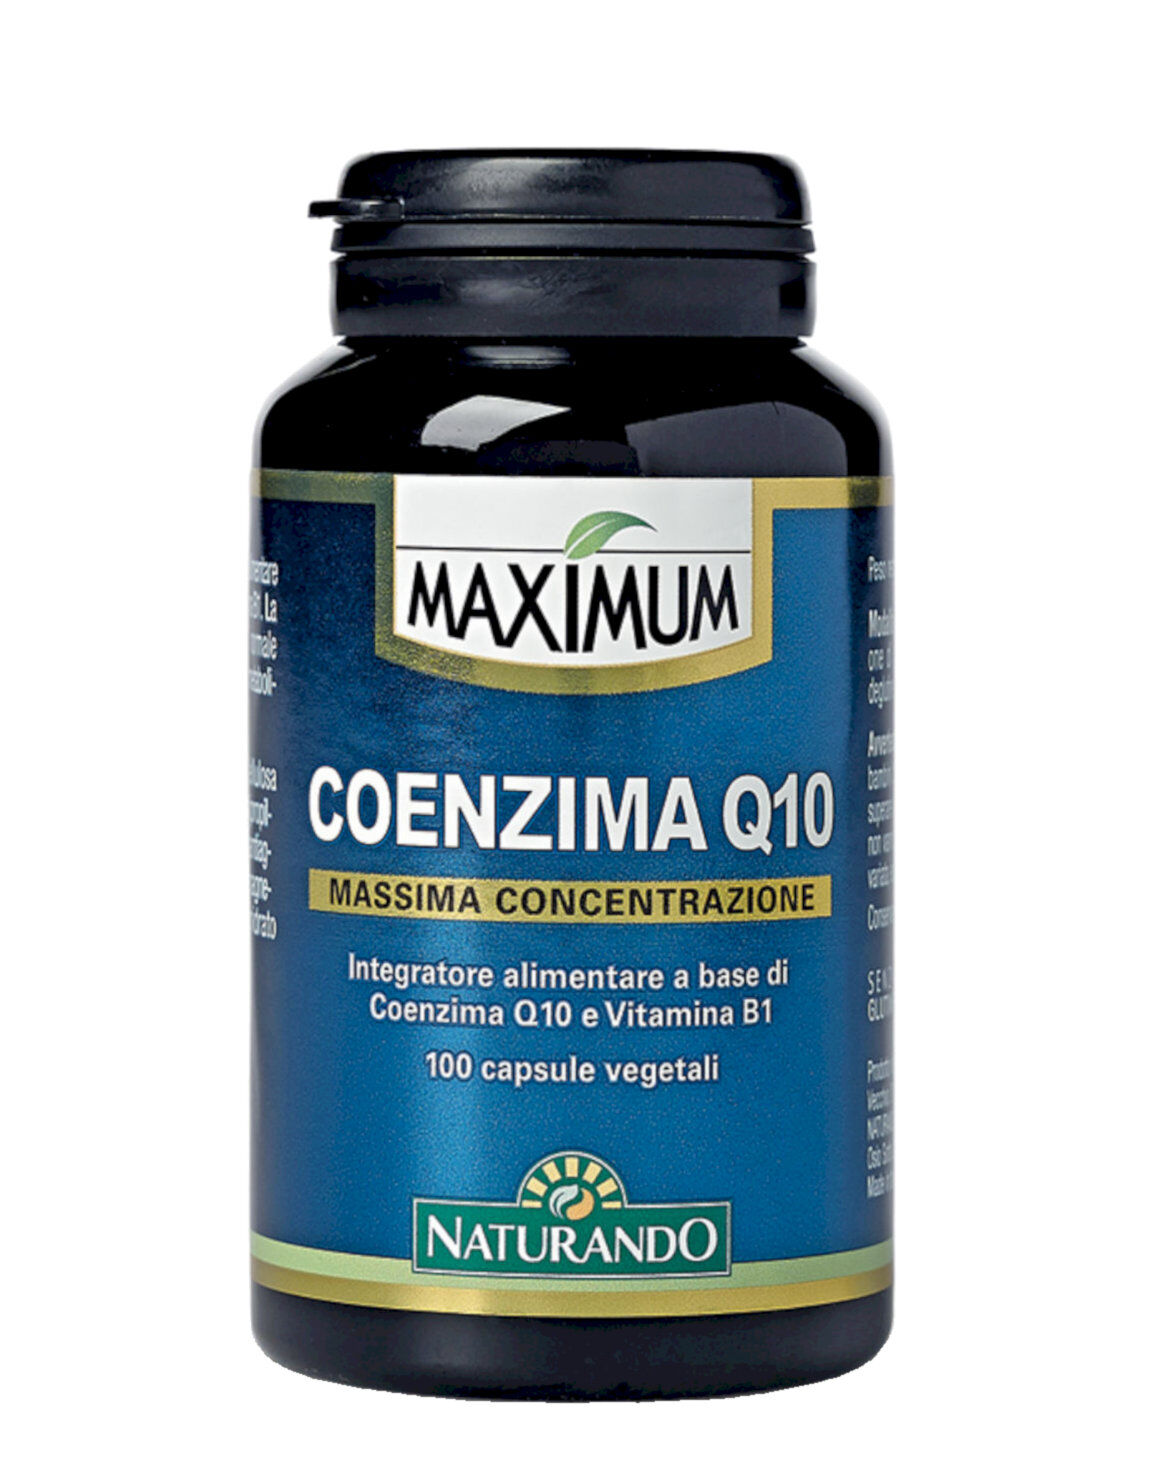 NATURANDO Maximum - Coenzima Q10 100 Capsule Vegetali